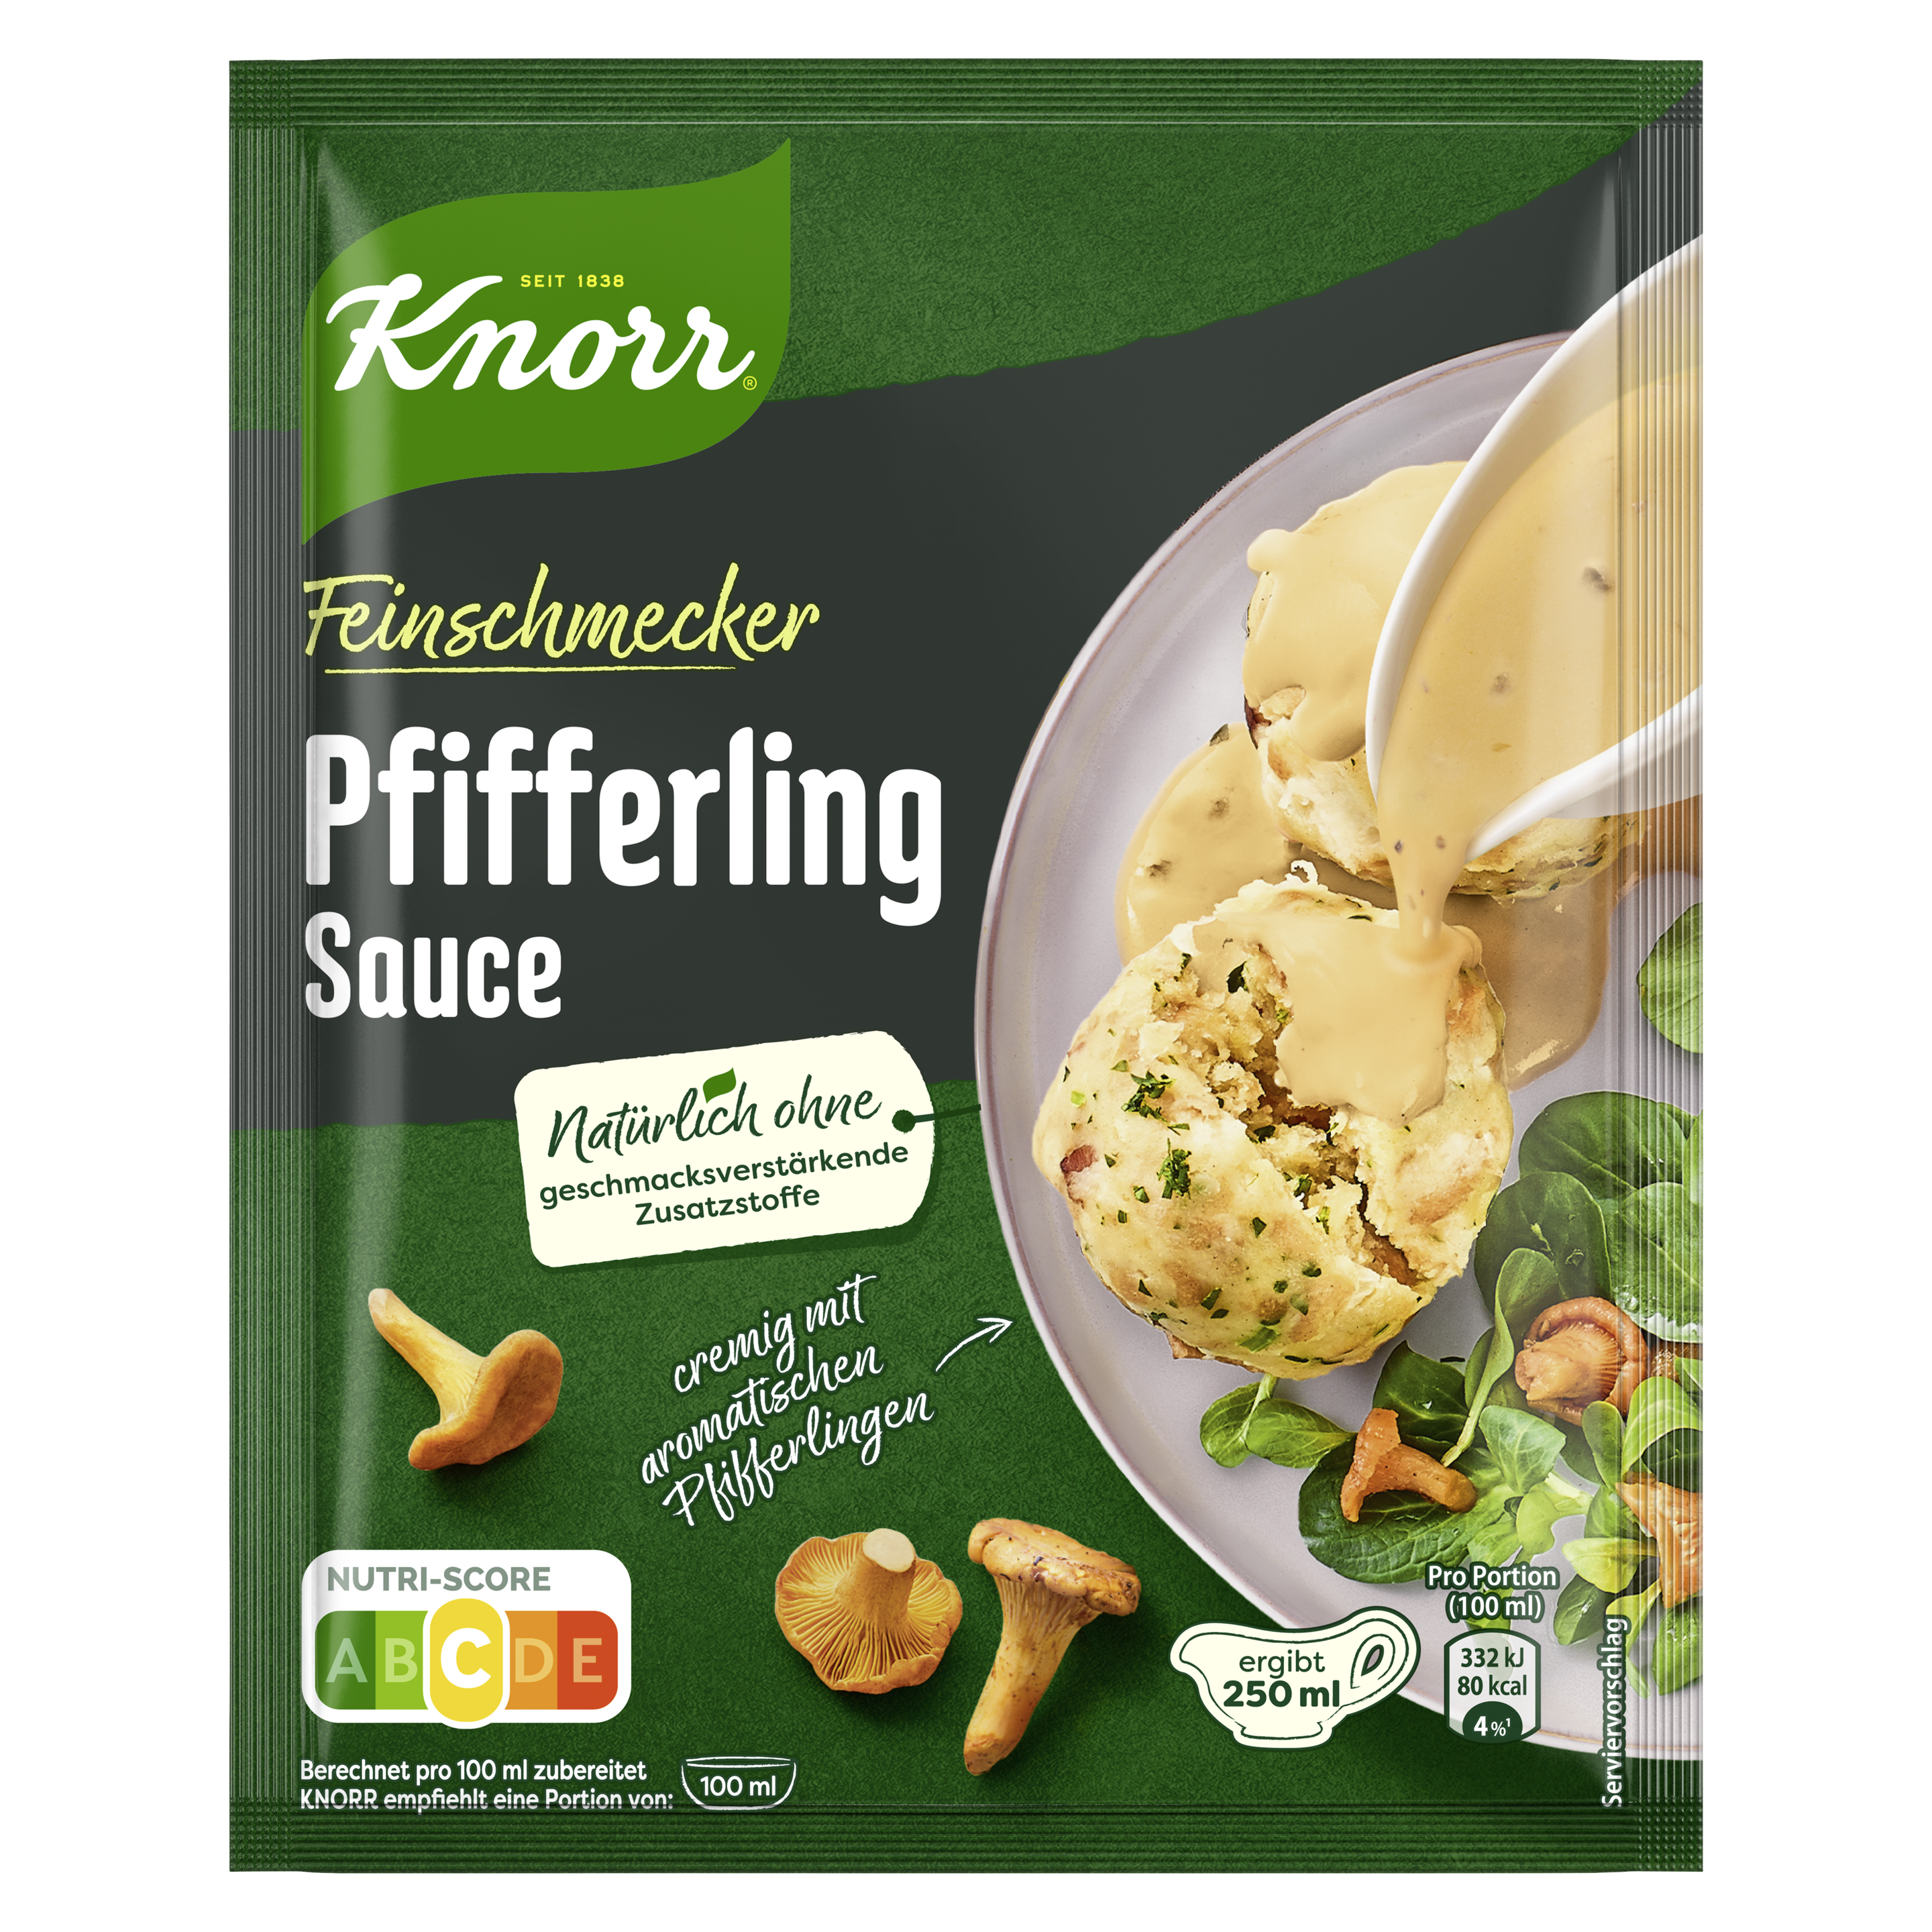 Knorr Feinschmecker Pfifferling Sauce ergibt 250 ml